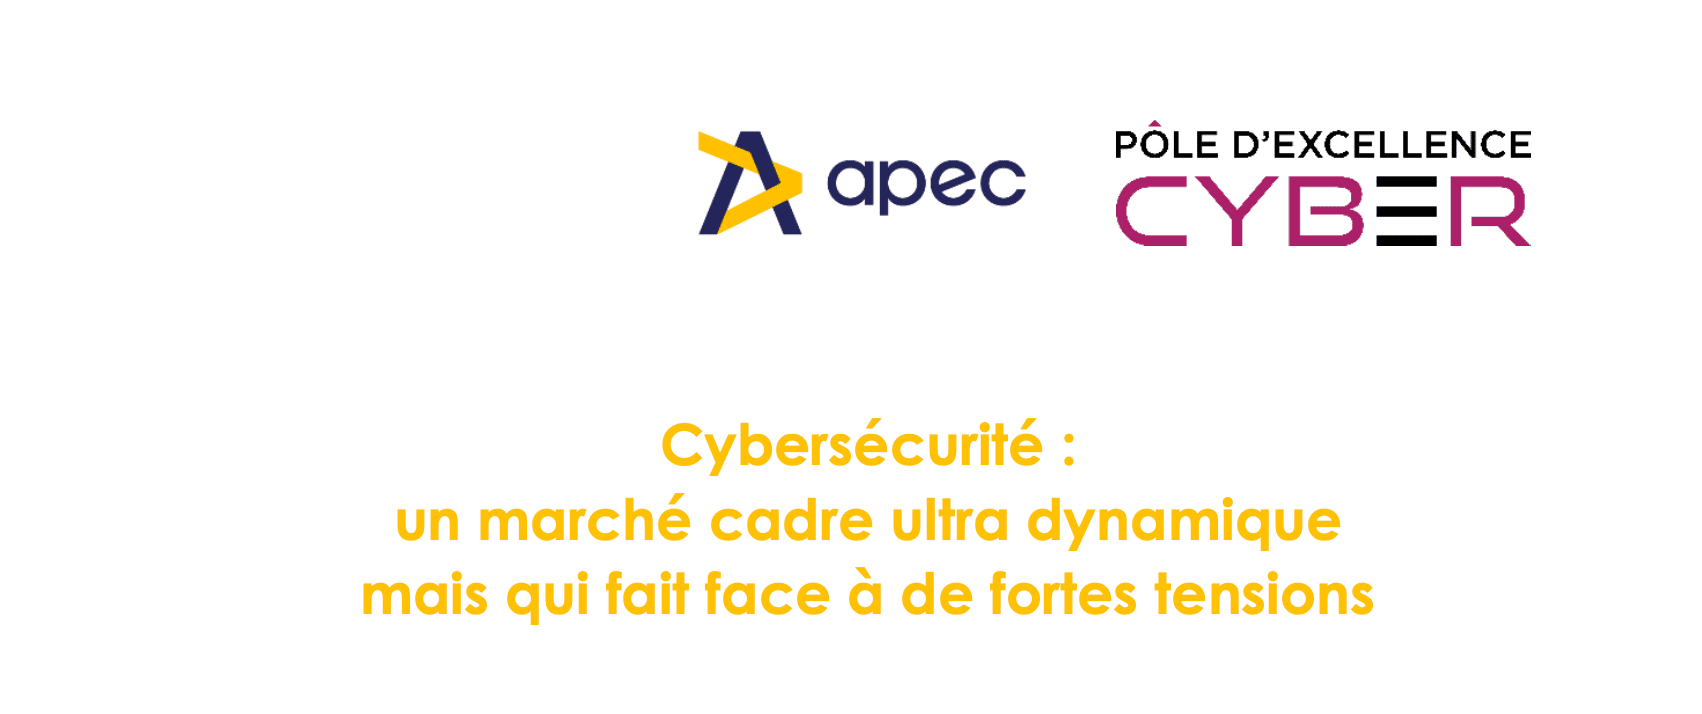 [Étude PEC x Apec] Cybersécurité : un marché de l’emploi cadre diversifié et de plus en plus porteur